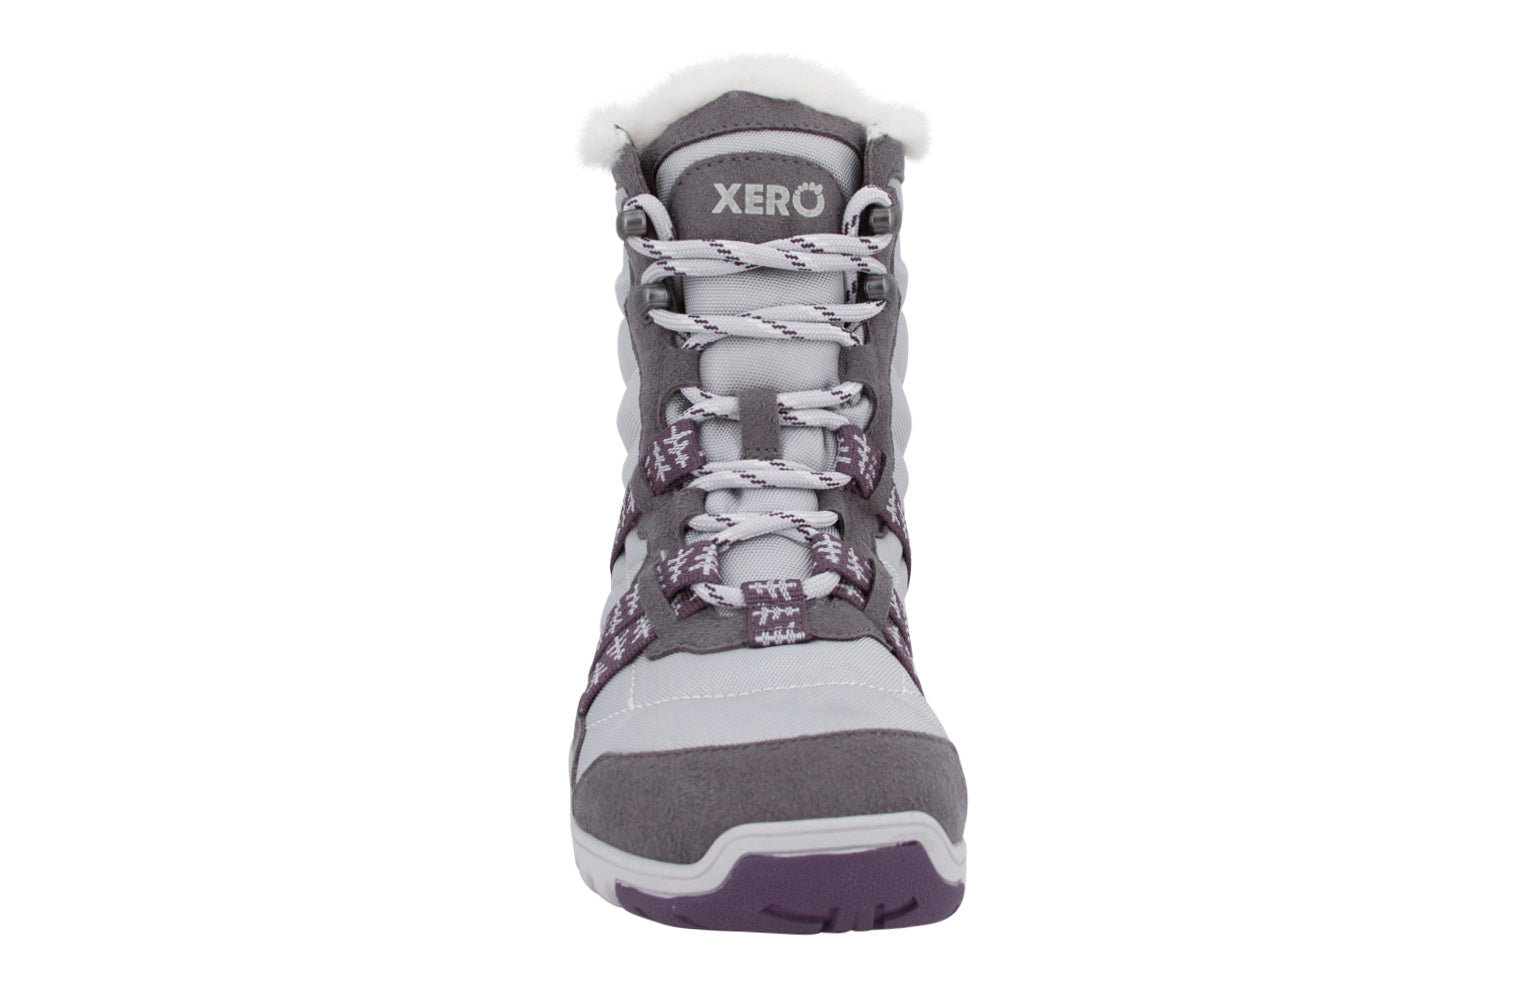 Xero Shoes Alpine Womens barfods vinterstøvler til kvinder i farven frost, forfra